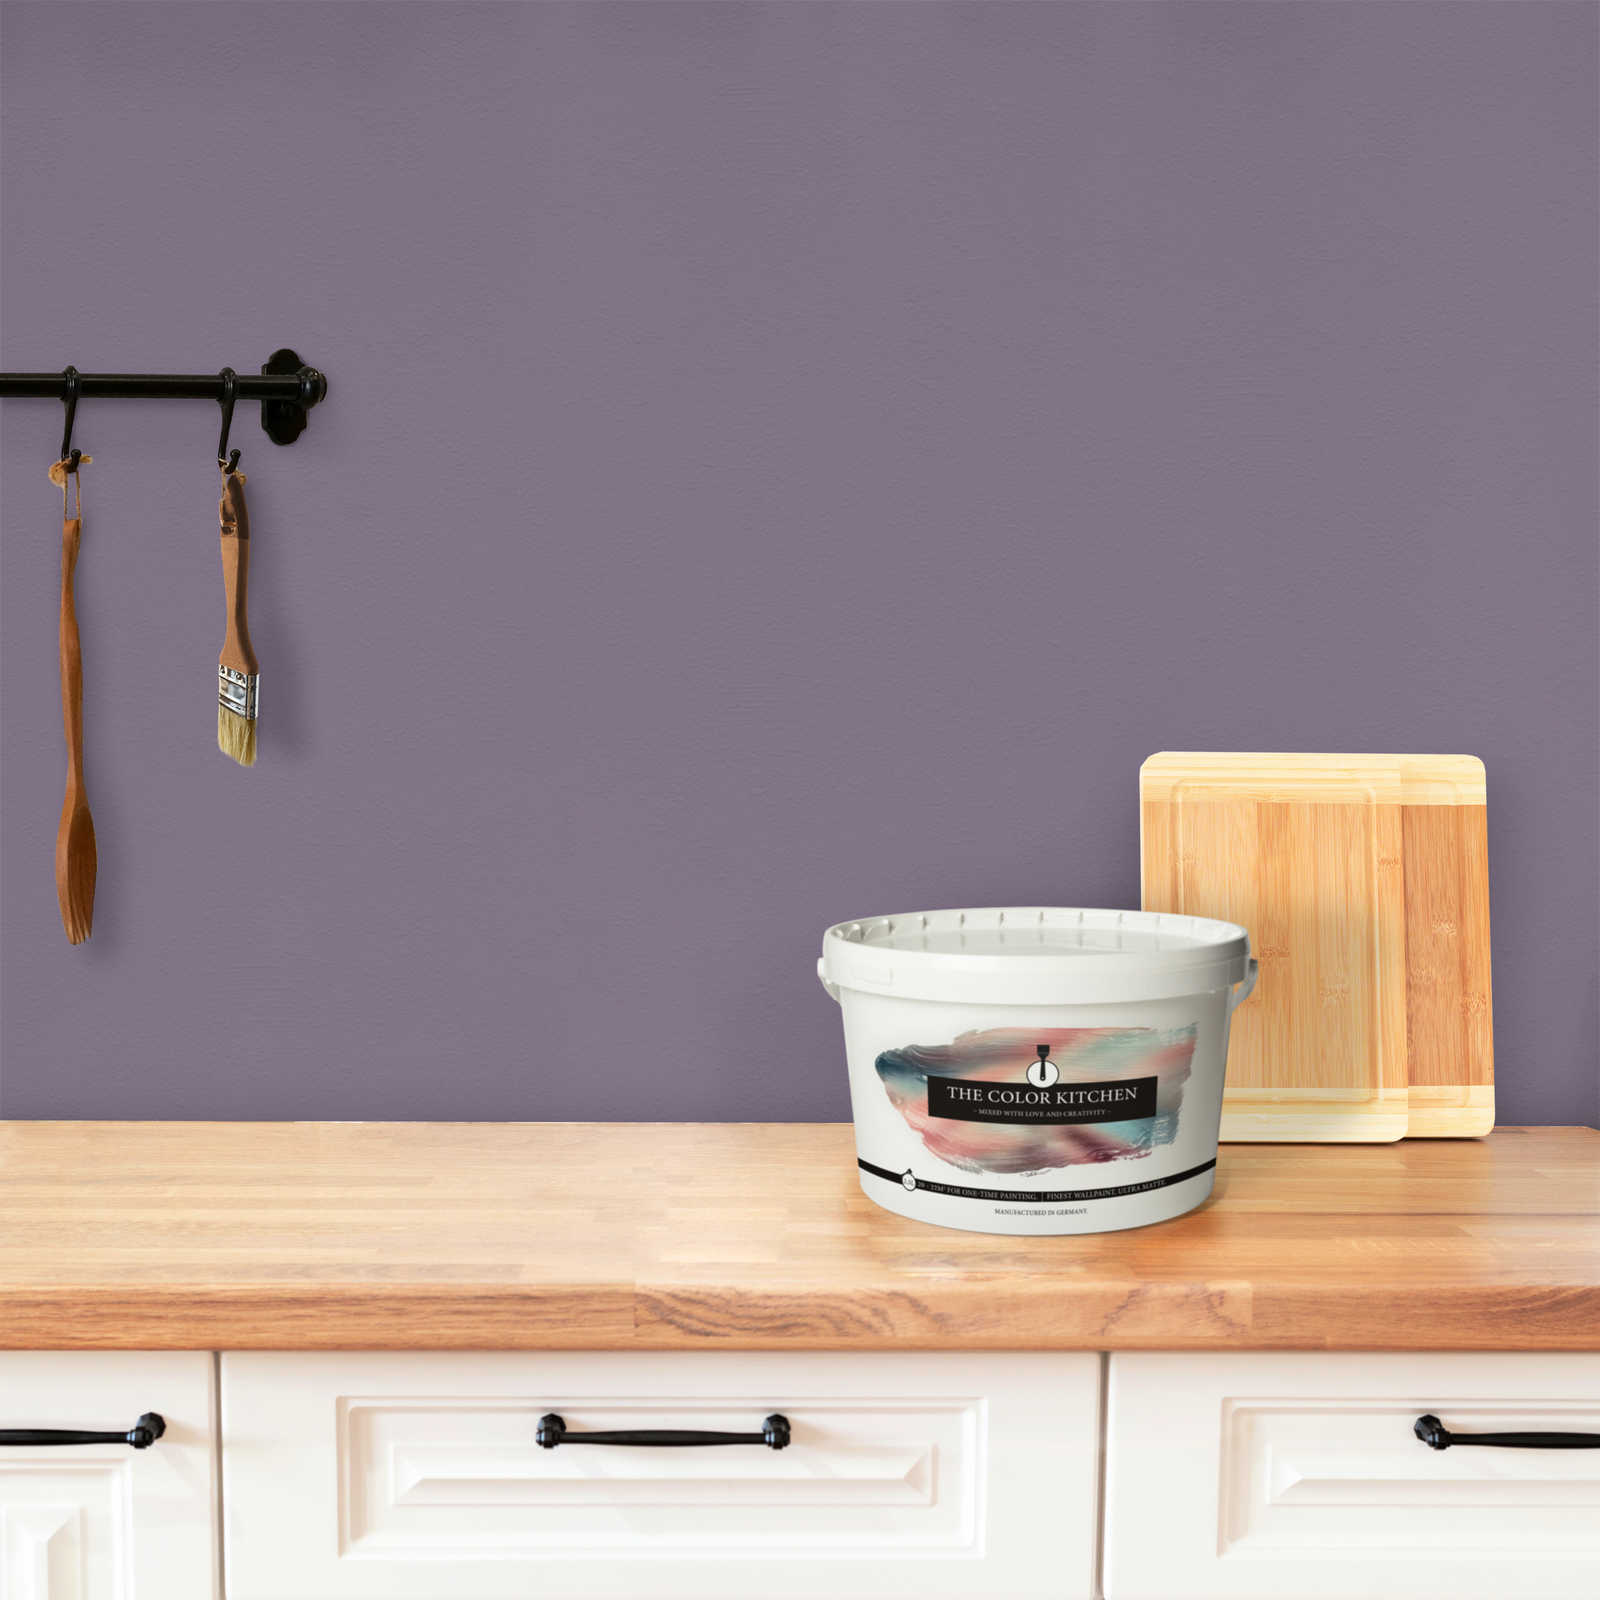             Wandfarbe in kräftigem Violett »Artful Aubergine« TCK2006 – 2,5 Liter
        